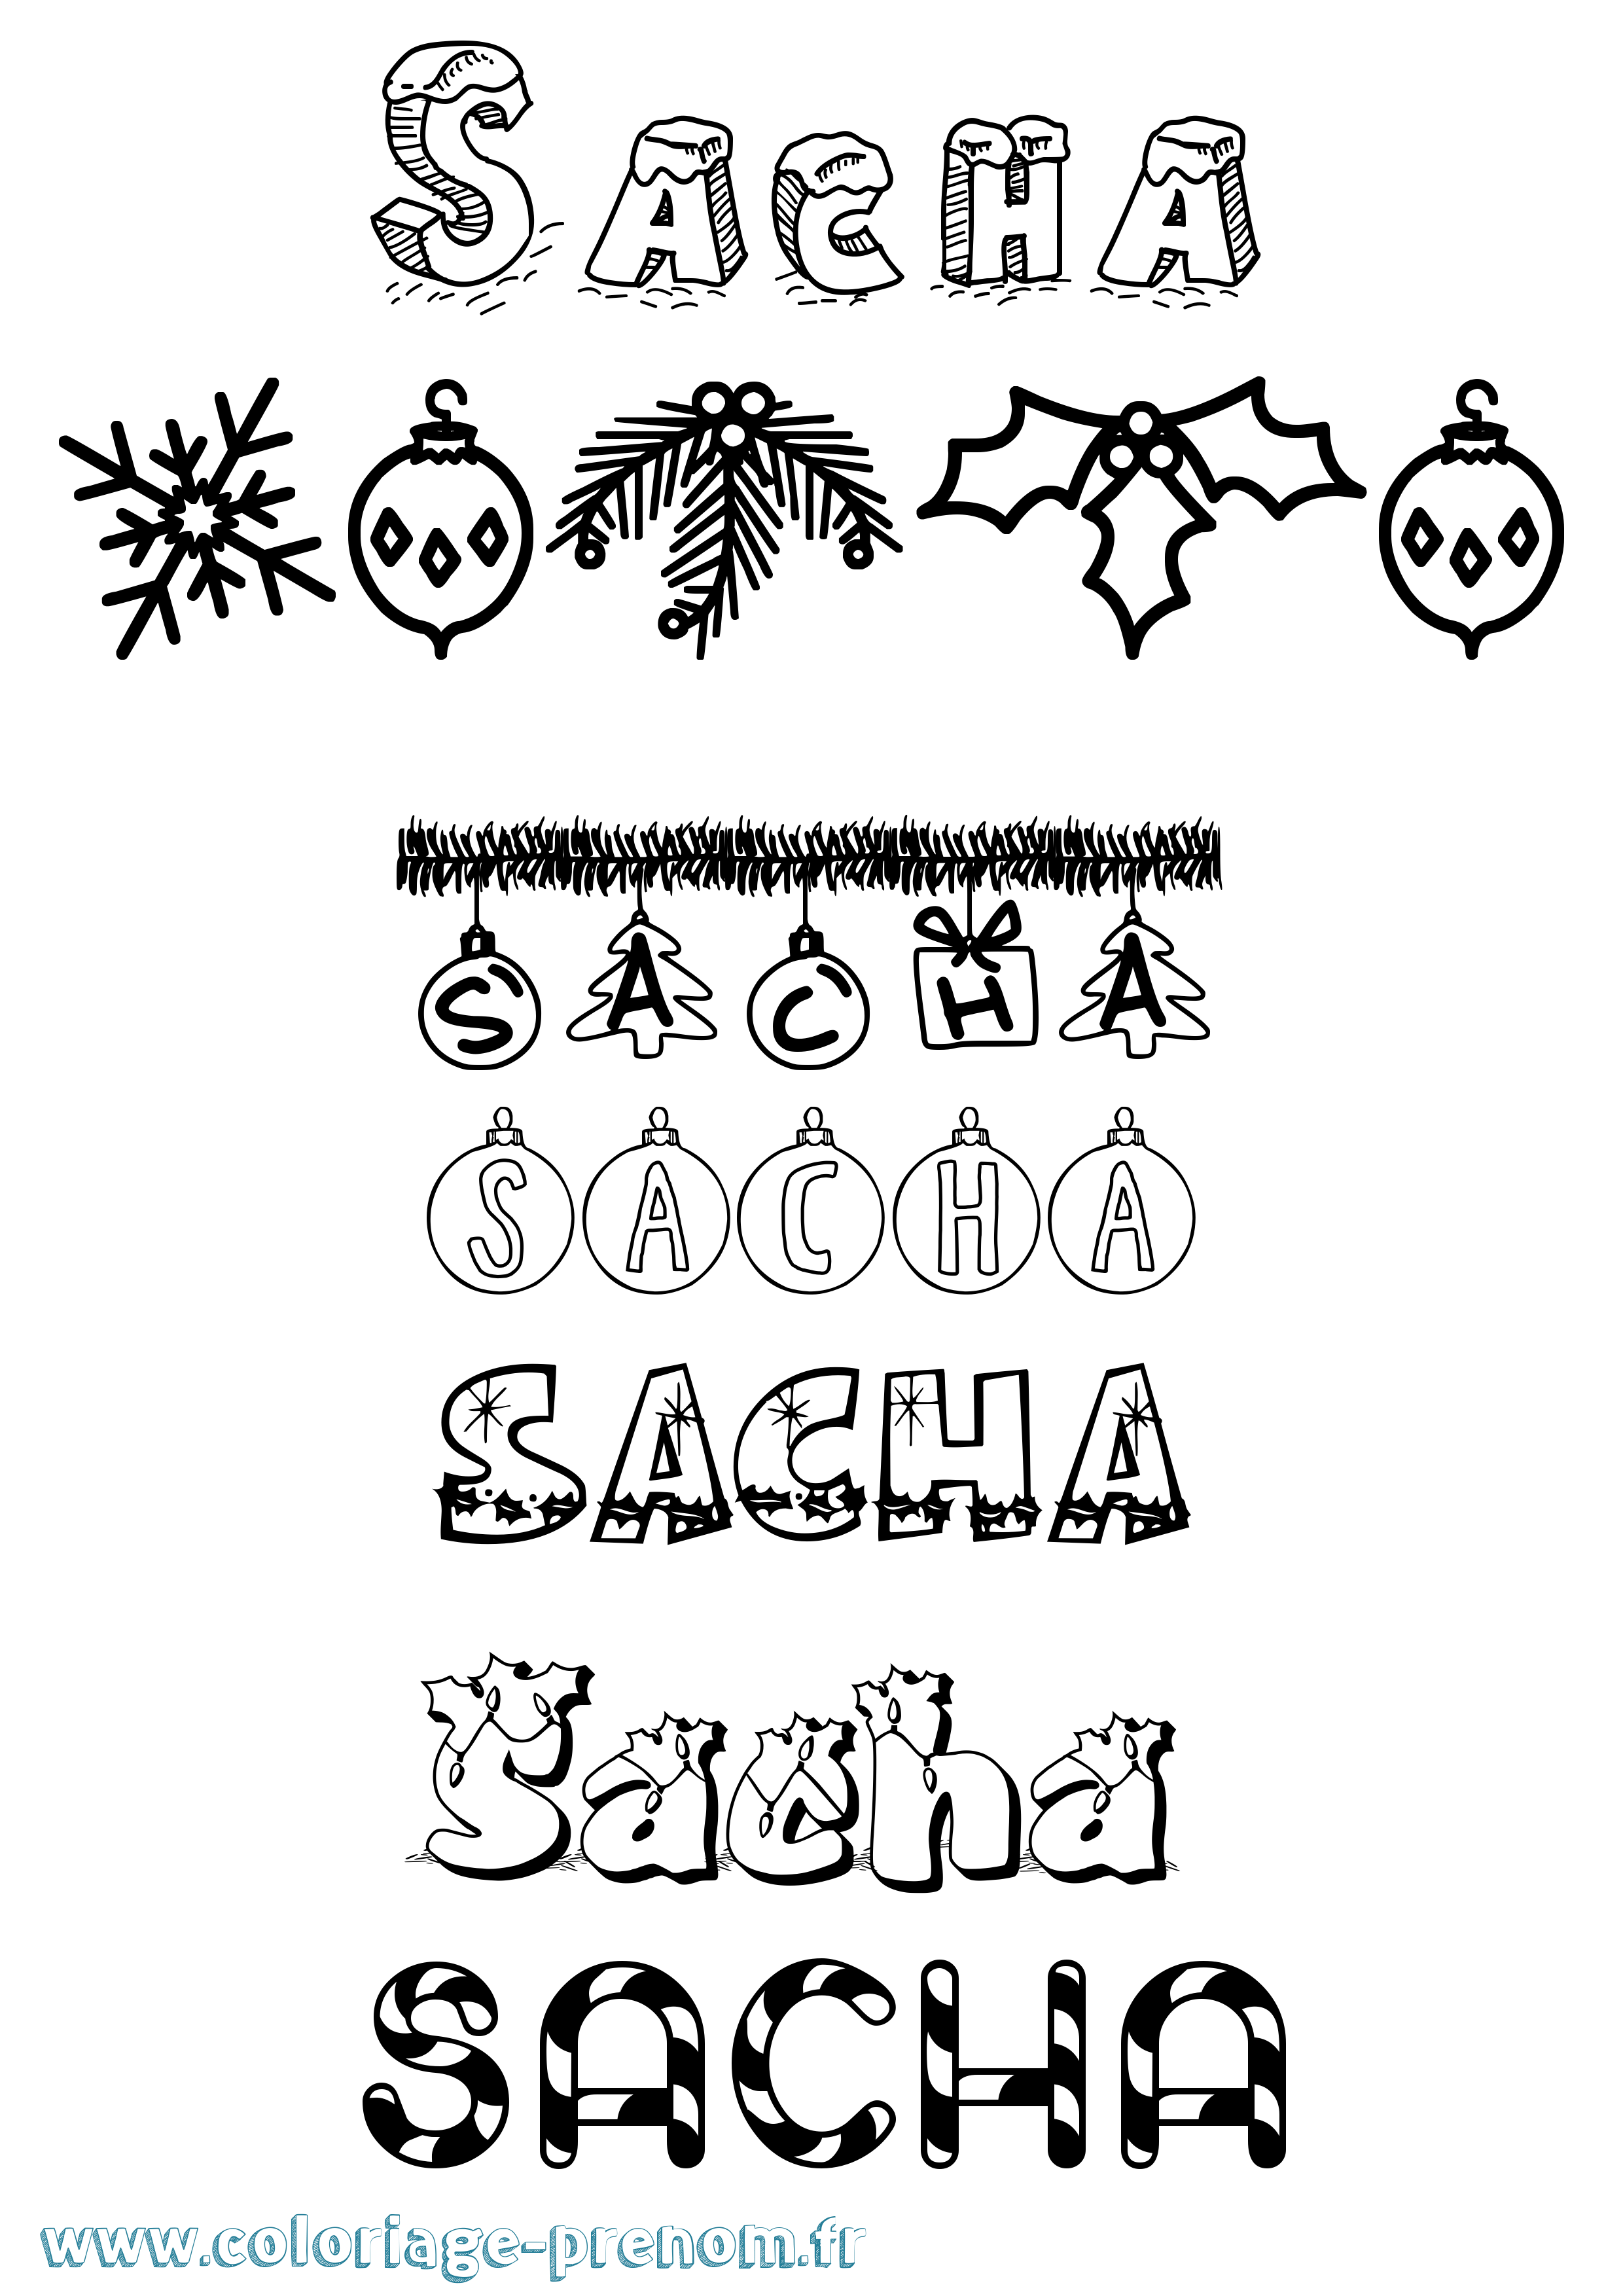 Coloriage prénom Sacha